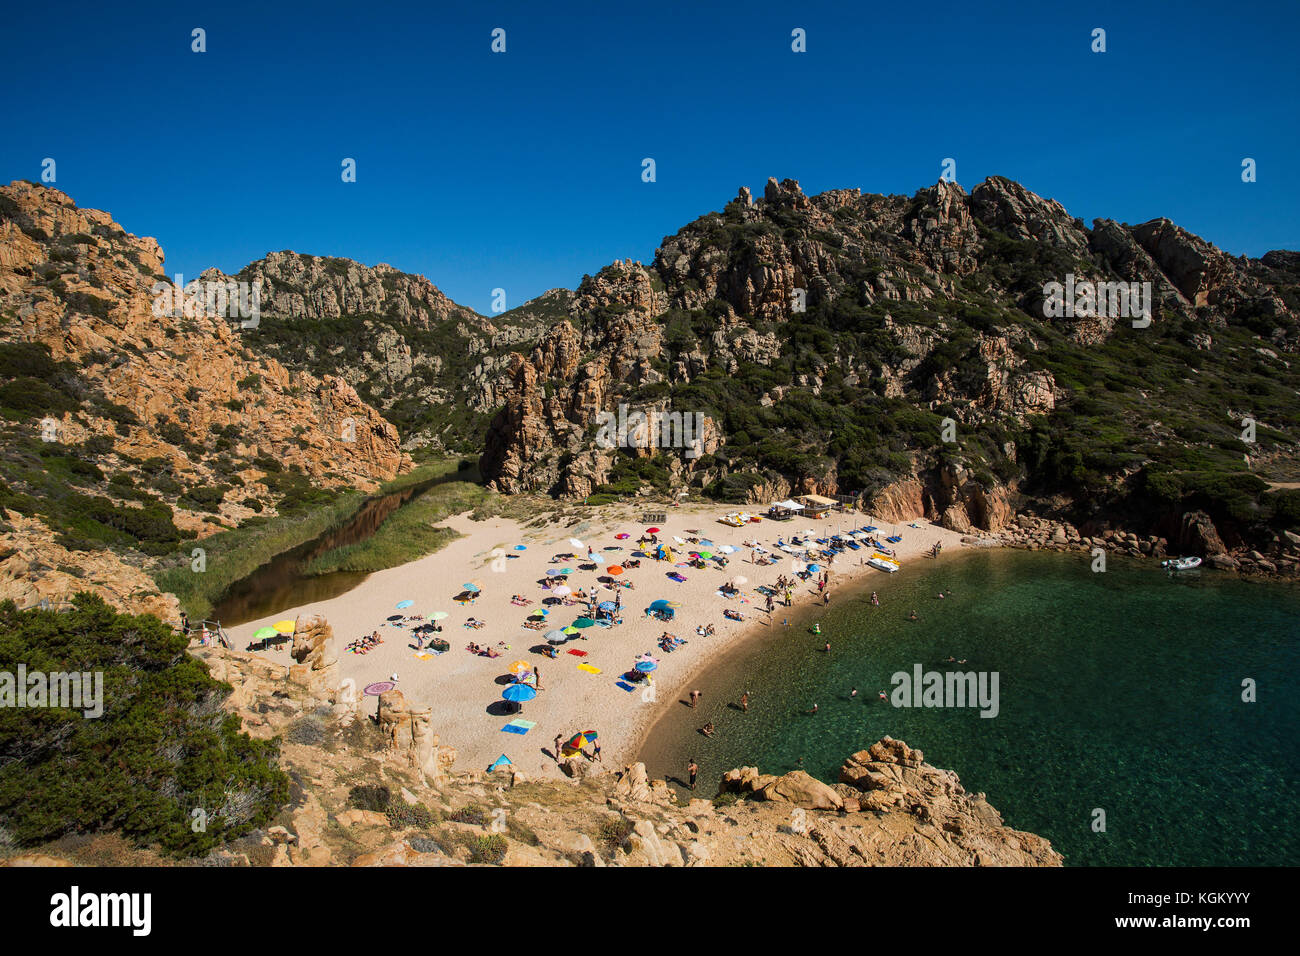 Vista panoramica della spiaggia e immerso in formazioni rocciose contro il cielo blu chiaro, Sardegna, Italia Foto Stock